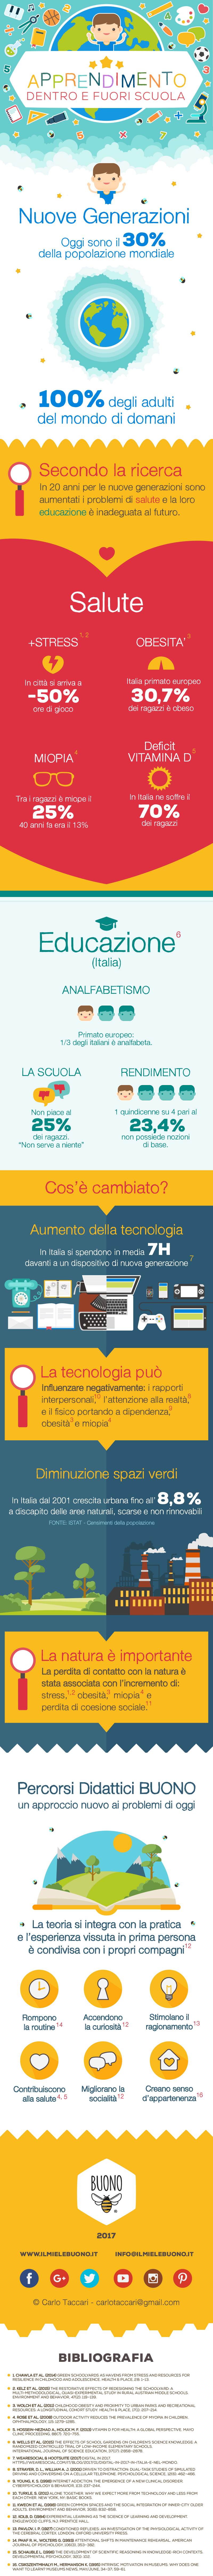 Infografica apprendimento dentro e fuori scuola ©Carlo Taccari carlotaccari@gmail.com